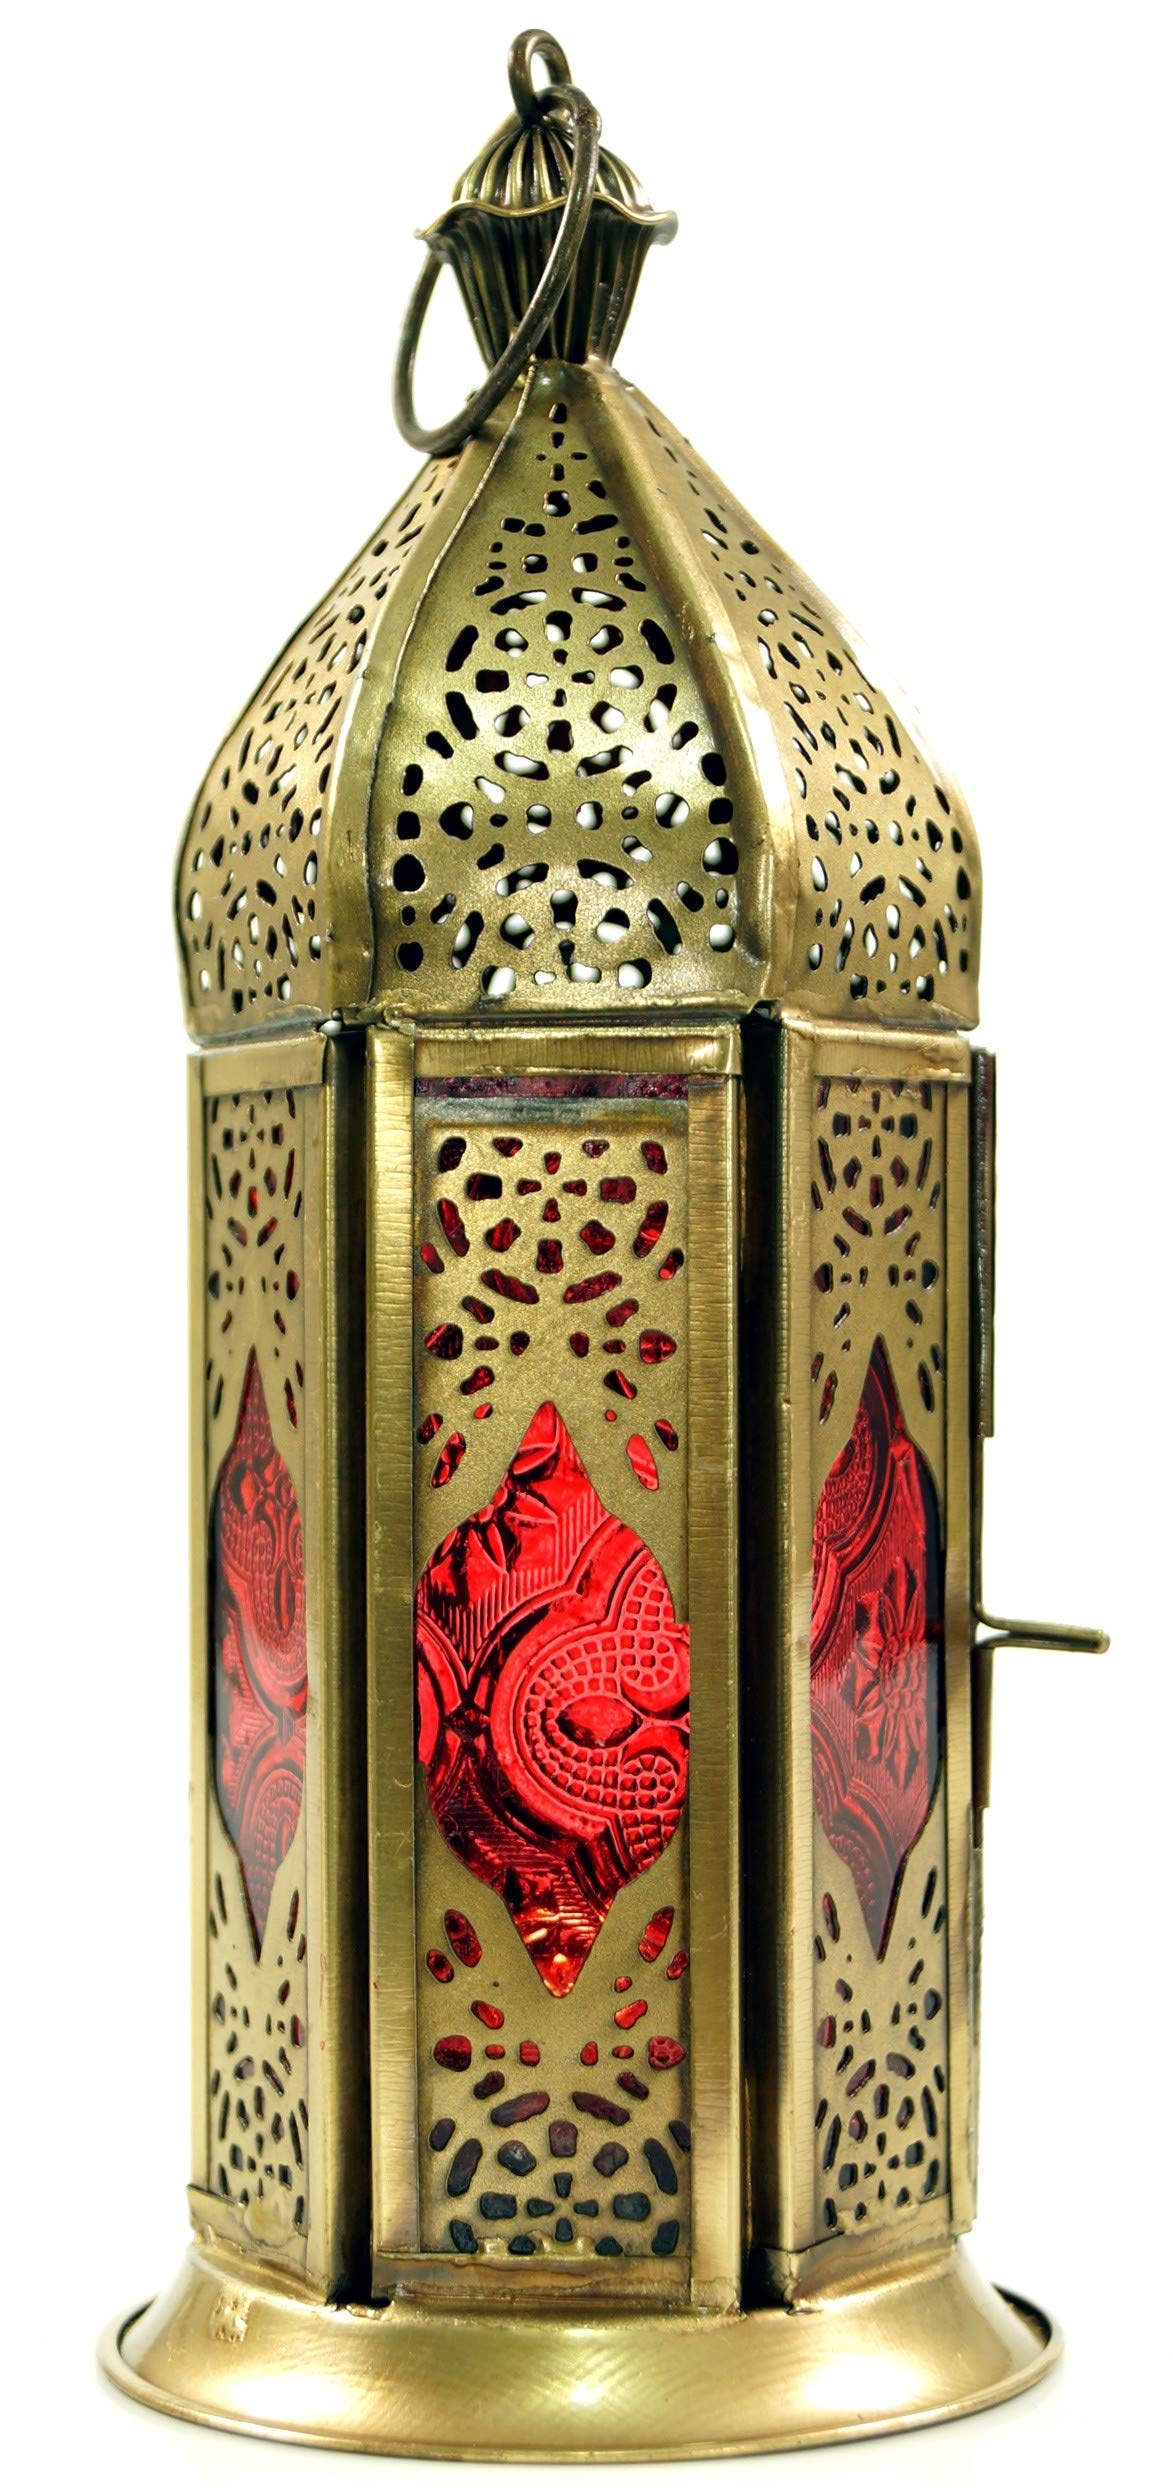 GURU SHOP Orientalische Metall/Glas Laterne in Marrokanischem Design, Vintage Windlicht, Rot, Farbe: Rot, 20x8x8 cm, Orientalische Laternen